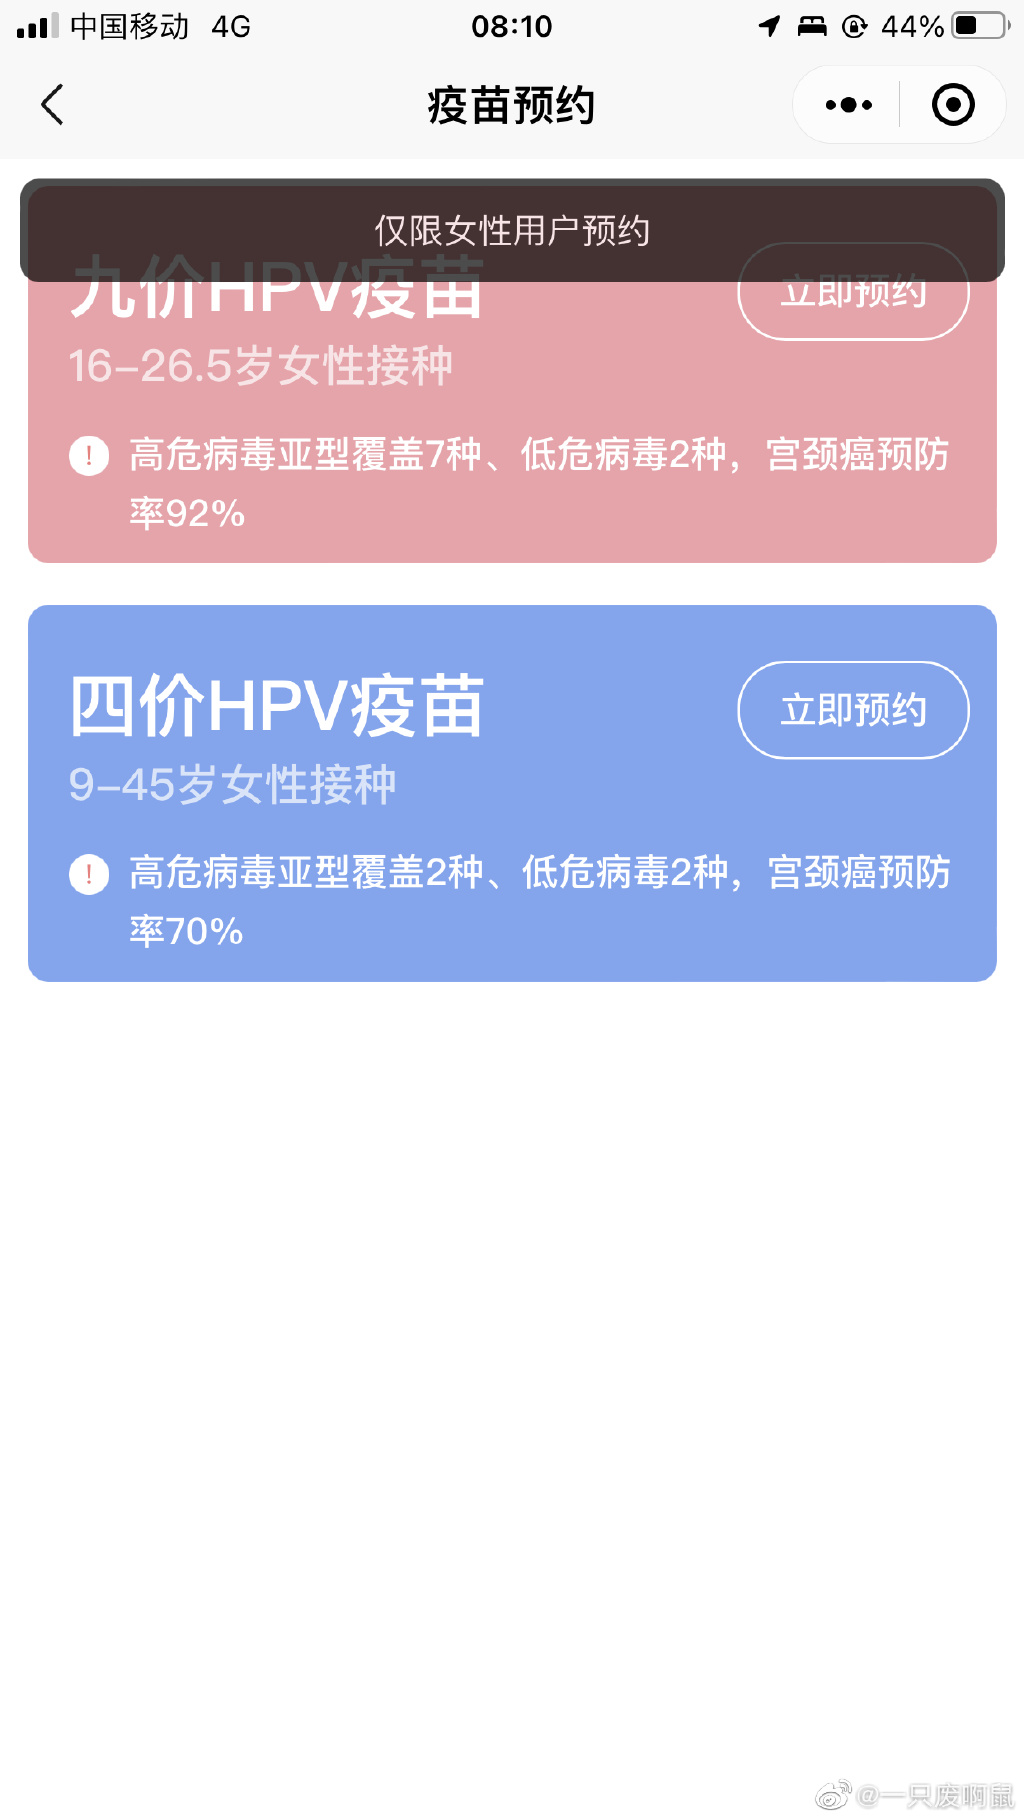 西安九价 陕西4月1日8时起可预约HPV